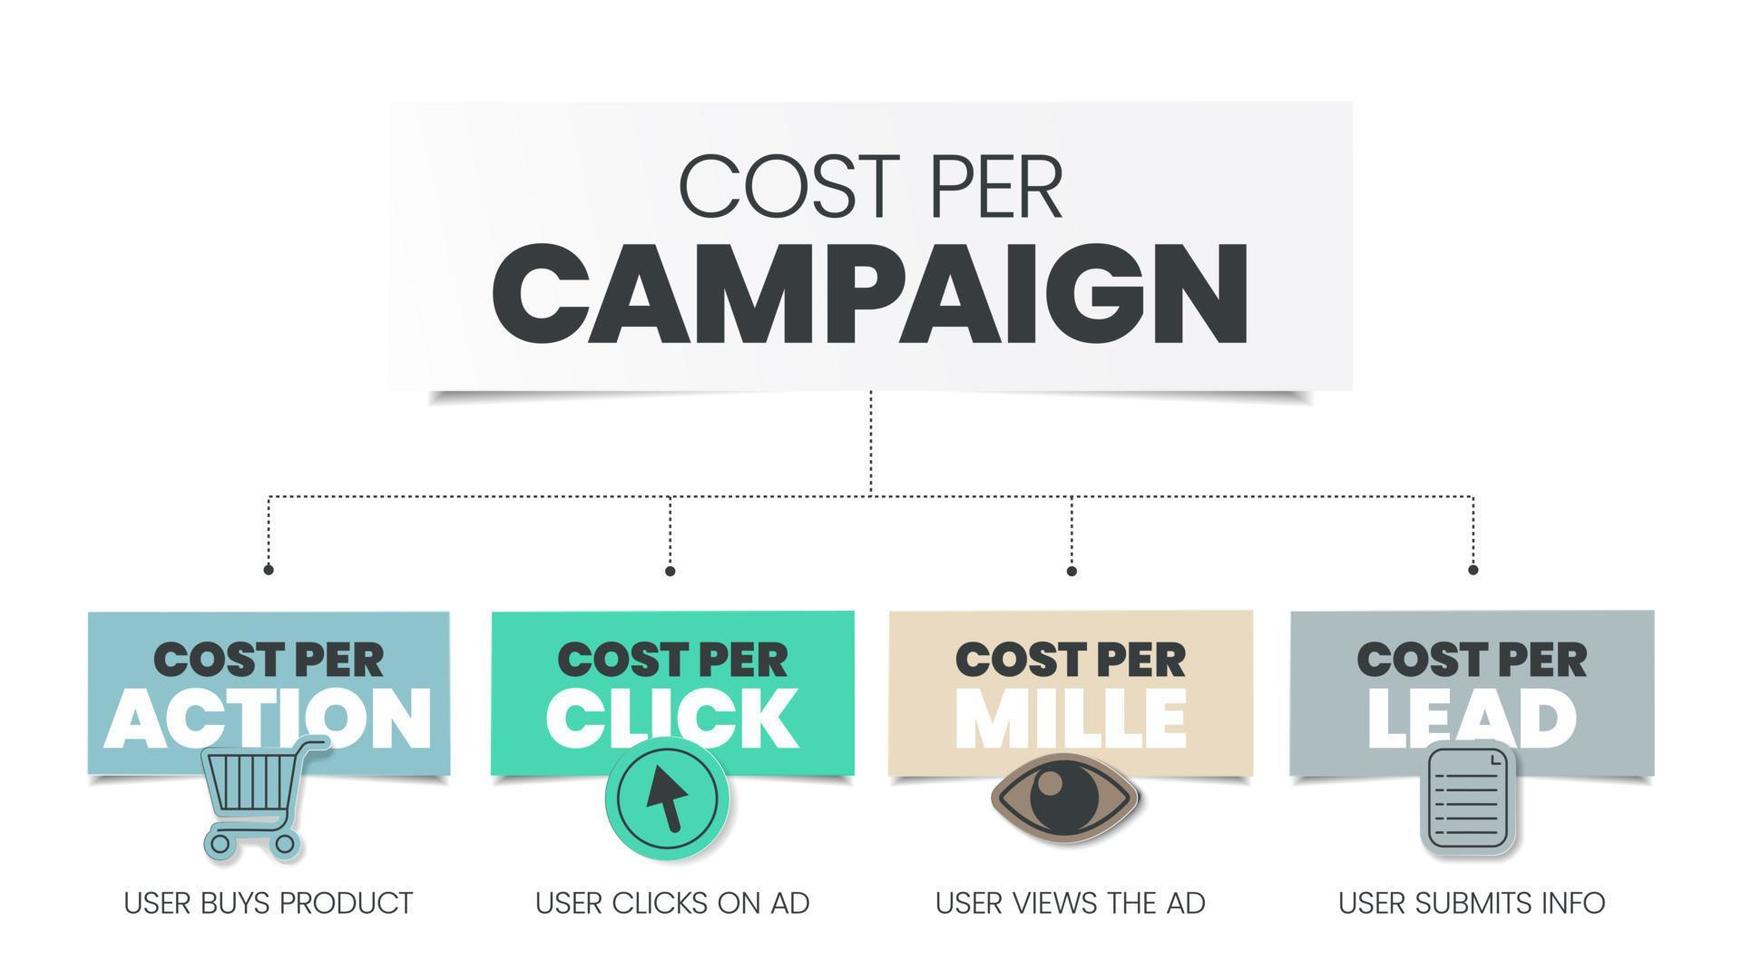 le coût par campagne fait partie de la publicité qui encourage le public à faire quelque chose, a 4 étapes à analyser, le coût cpm pour mille, le coût cpc par clic, le coût cpa par action et le taux de clics crt. vecteur